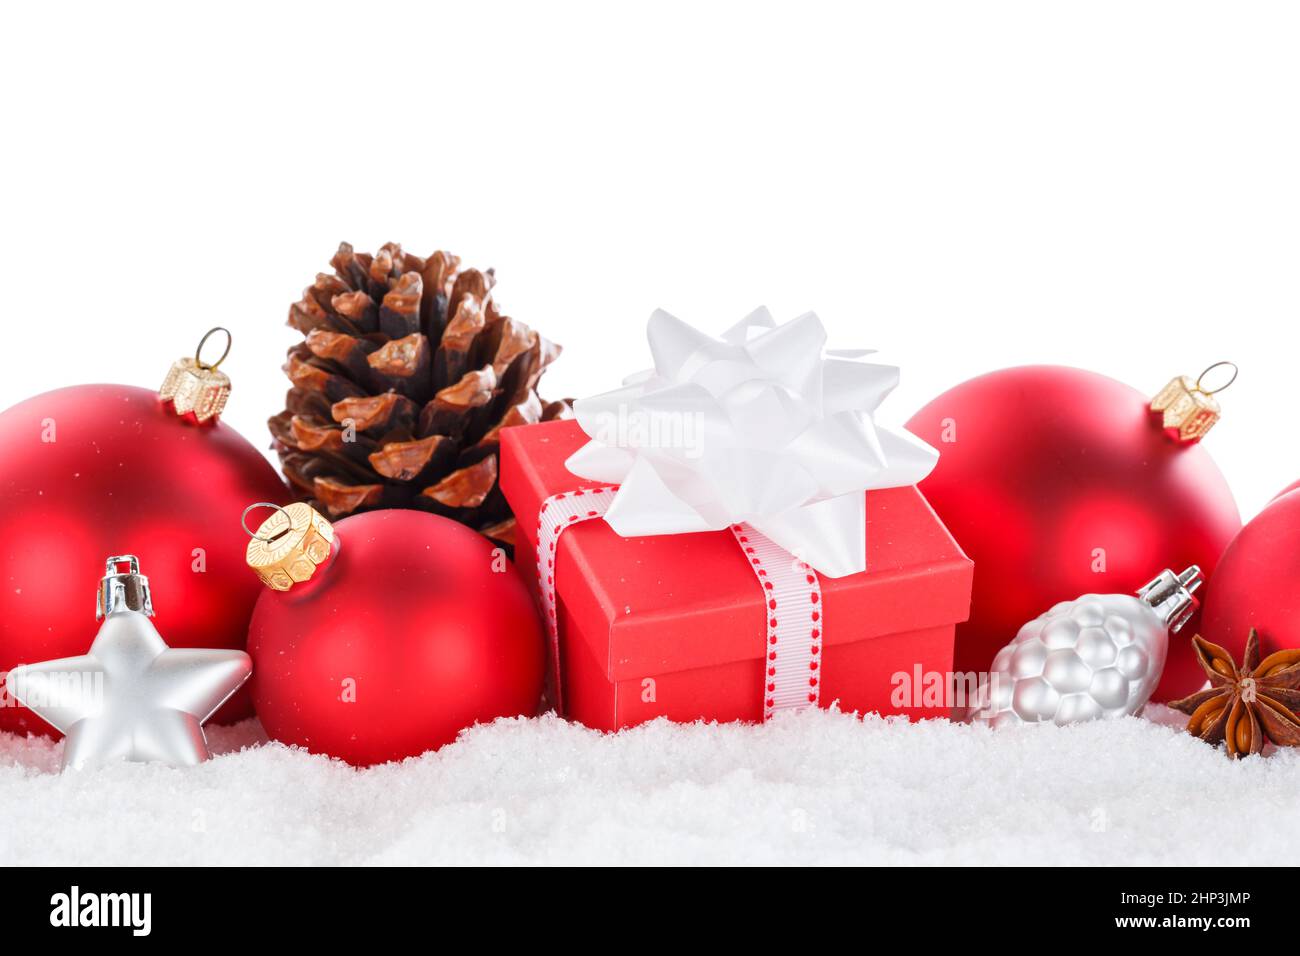 Weihnachtskugeln Kugeln Dekoration Geschenk Geschenk Ornamente isoliert auf einem weißen Hintergrund Stockfoto